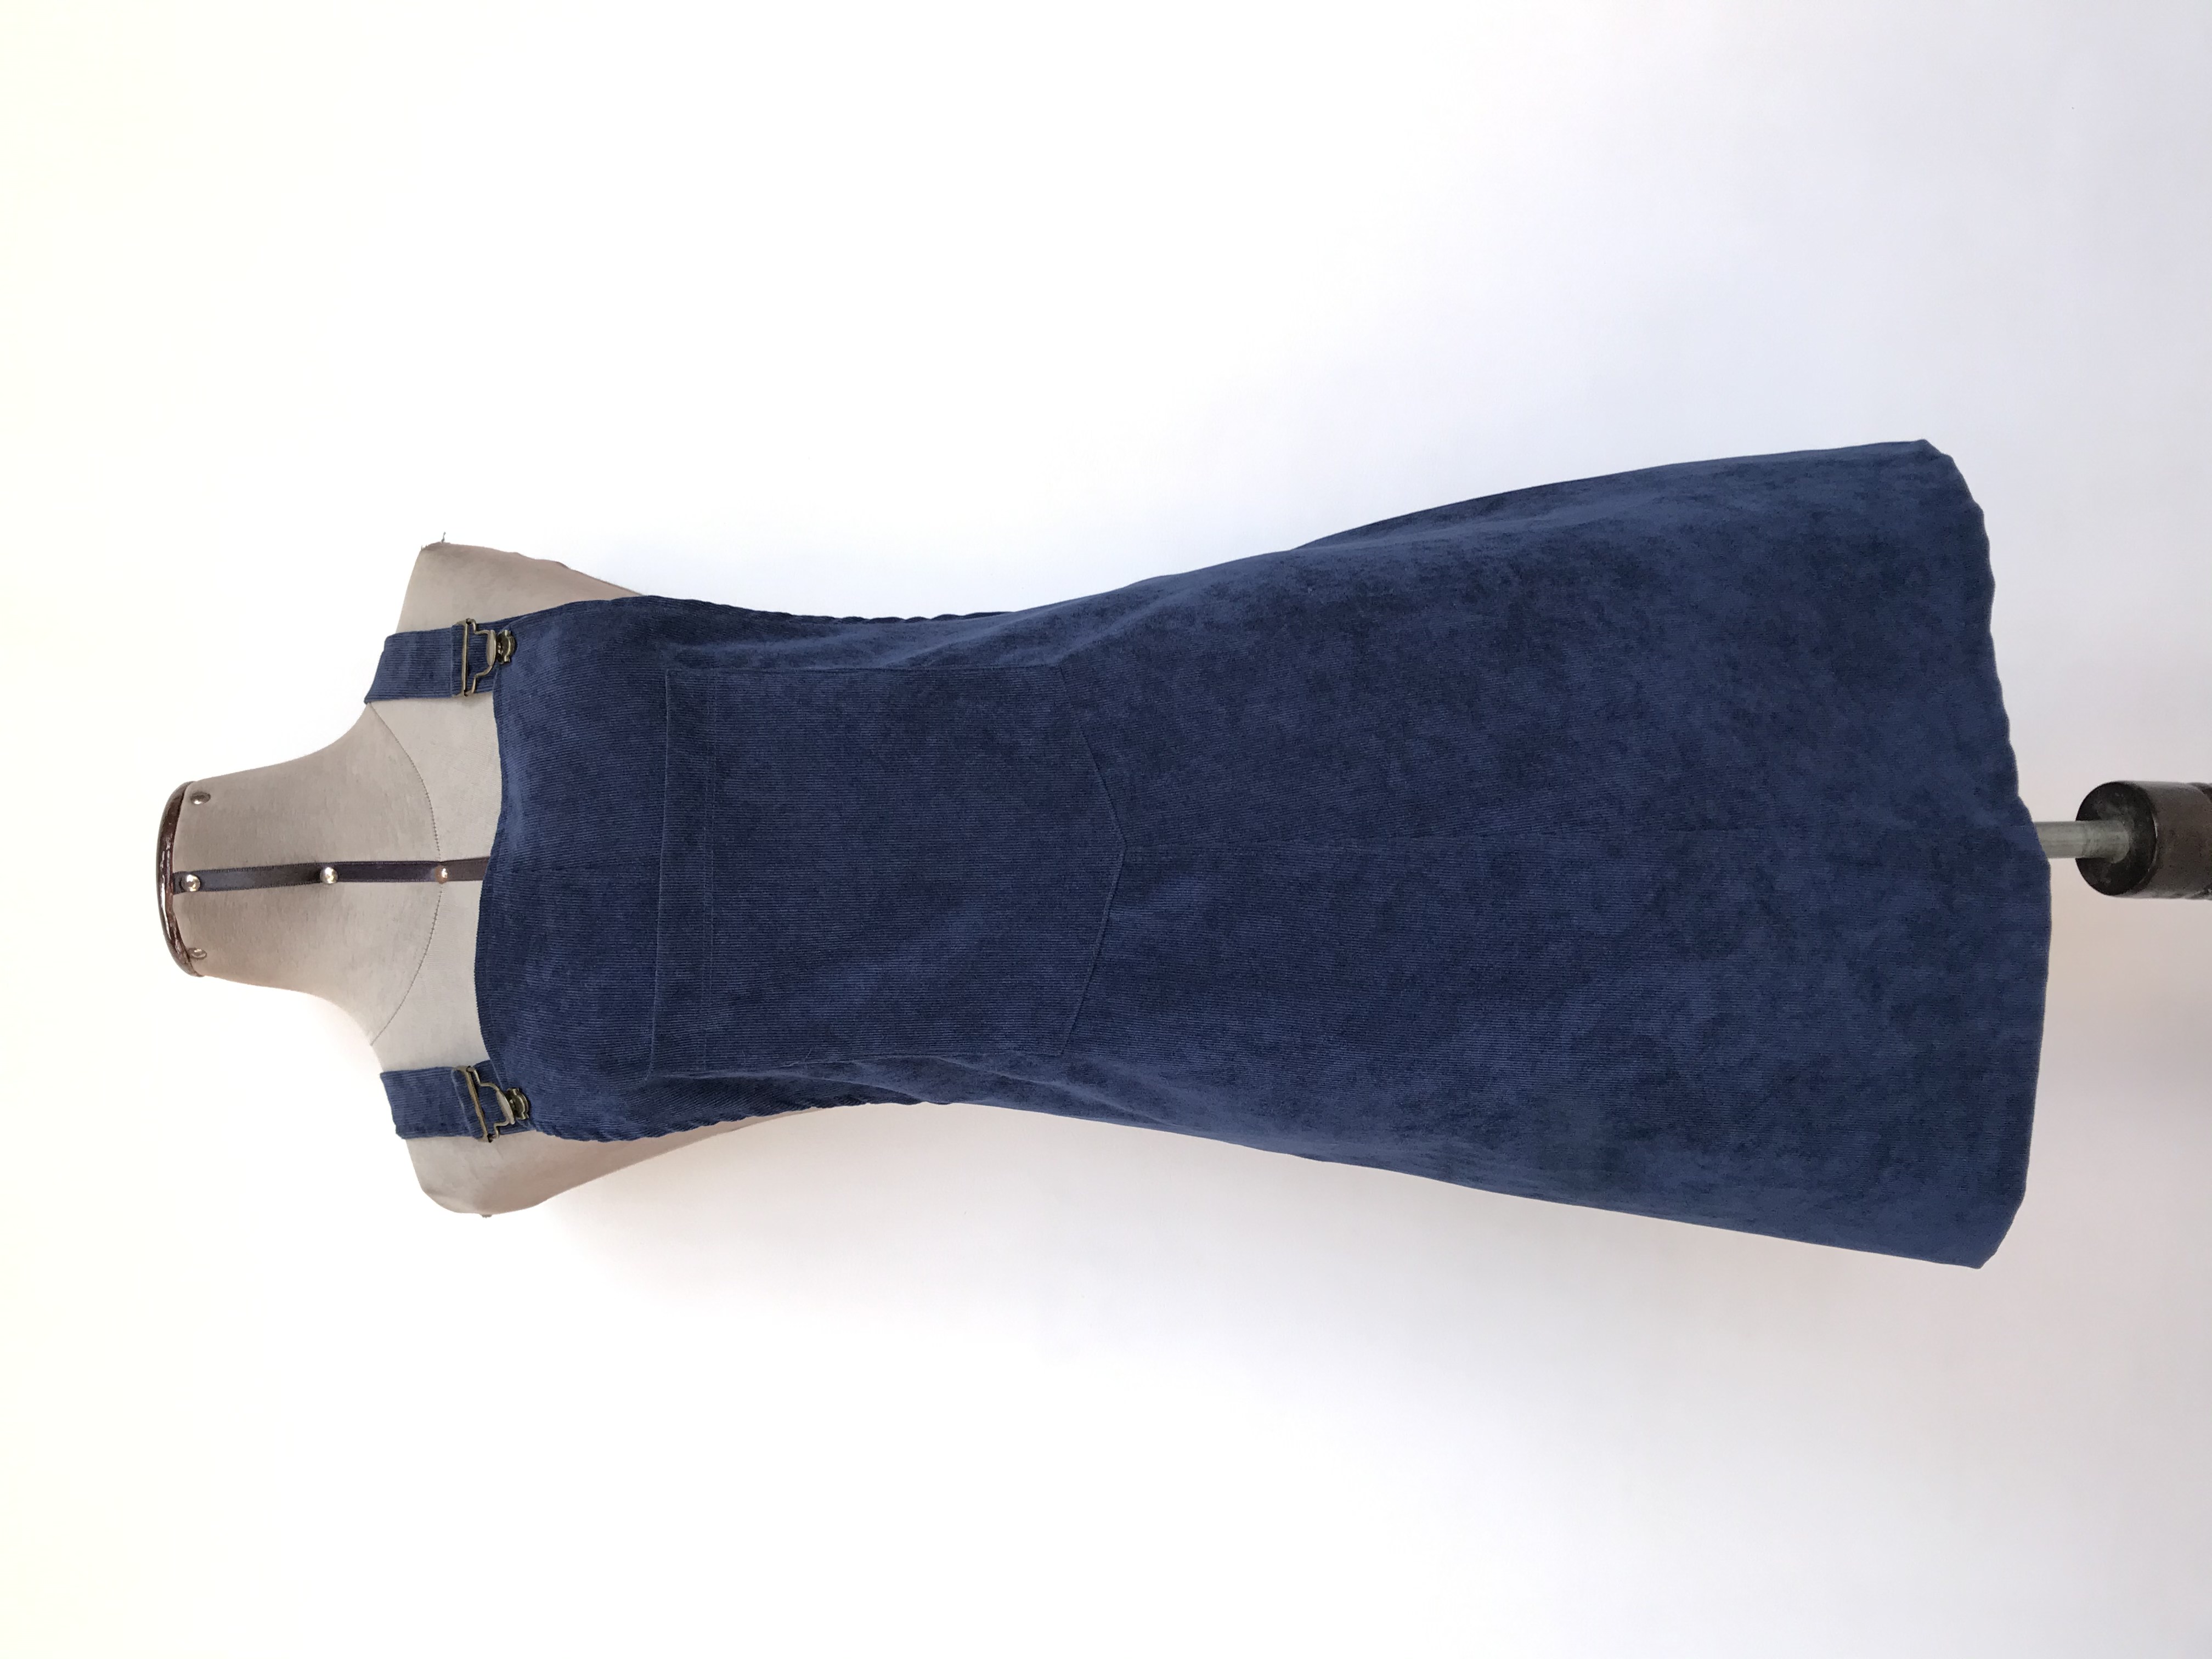 Vestido jumper de corduroy  azul, broches en tono bronce y bolsillo en el pecho
Talla S